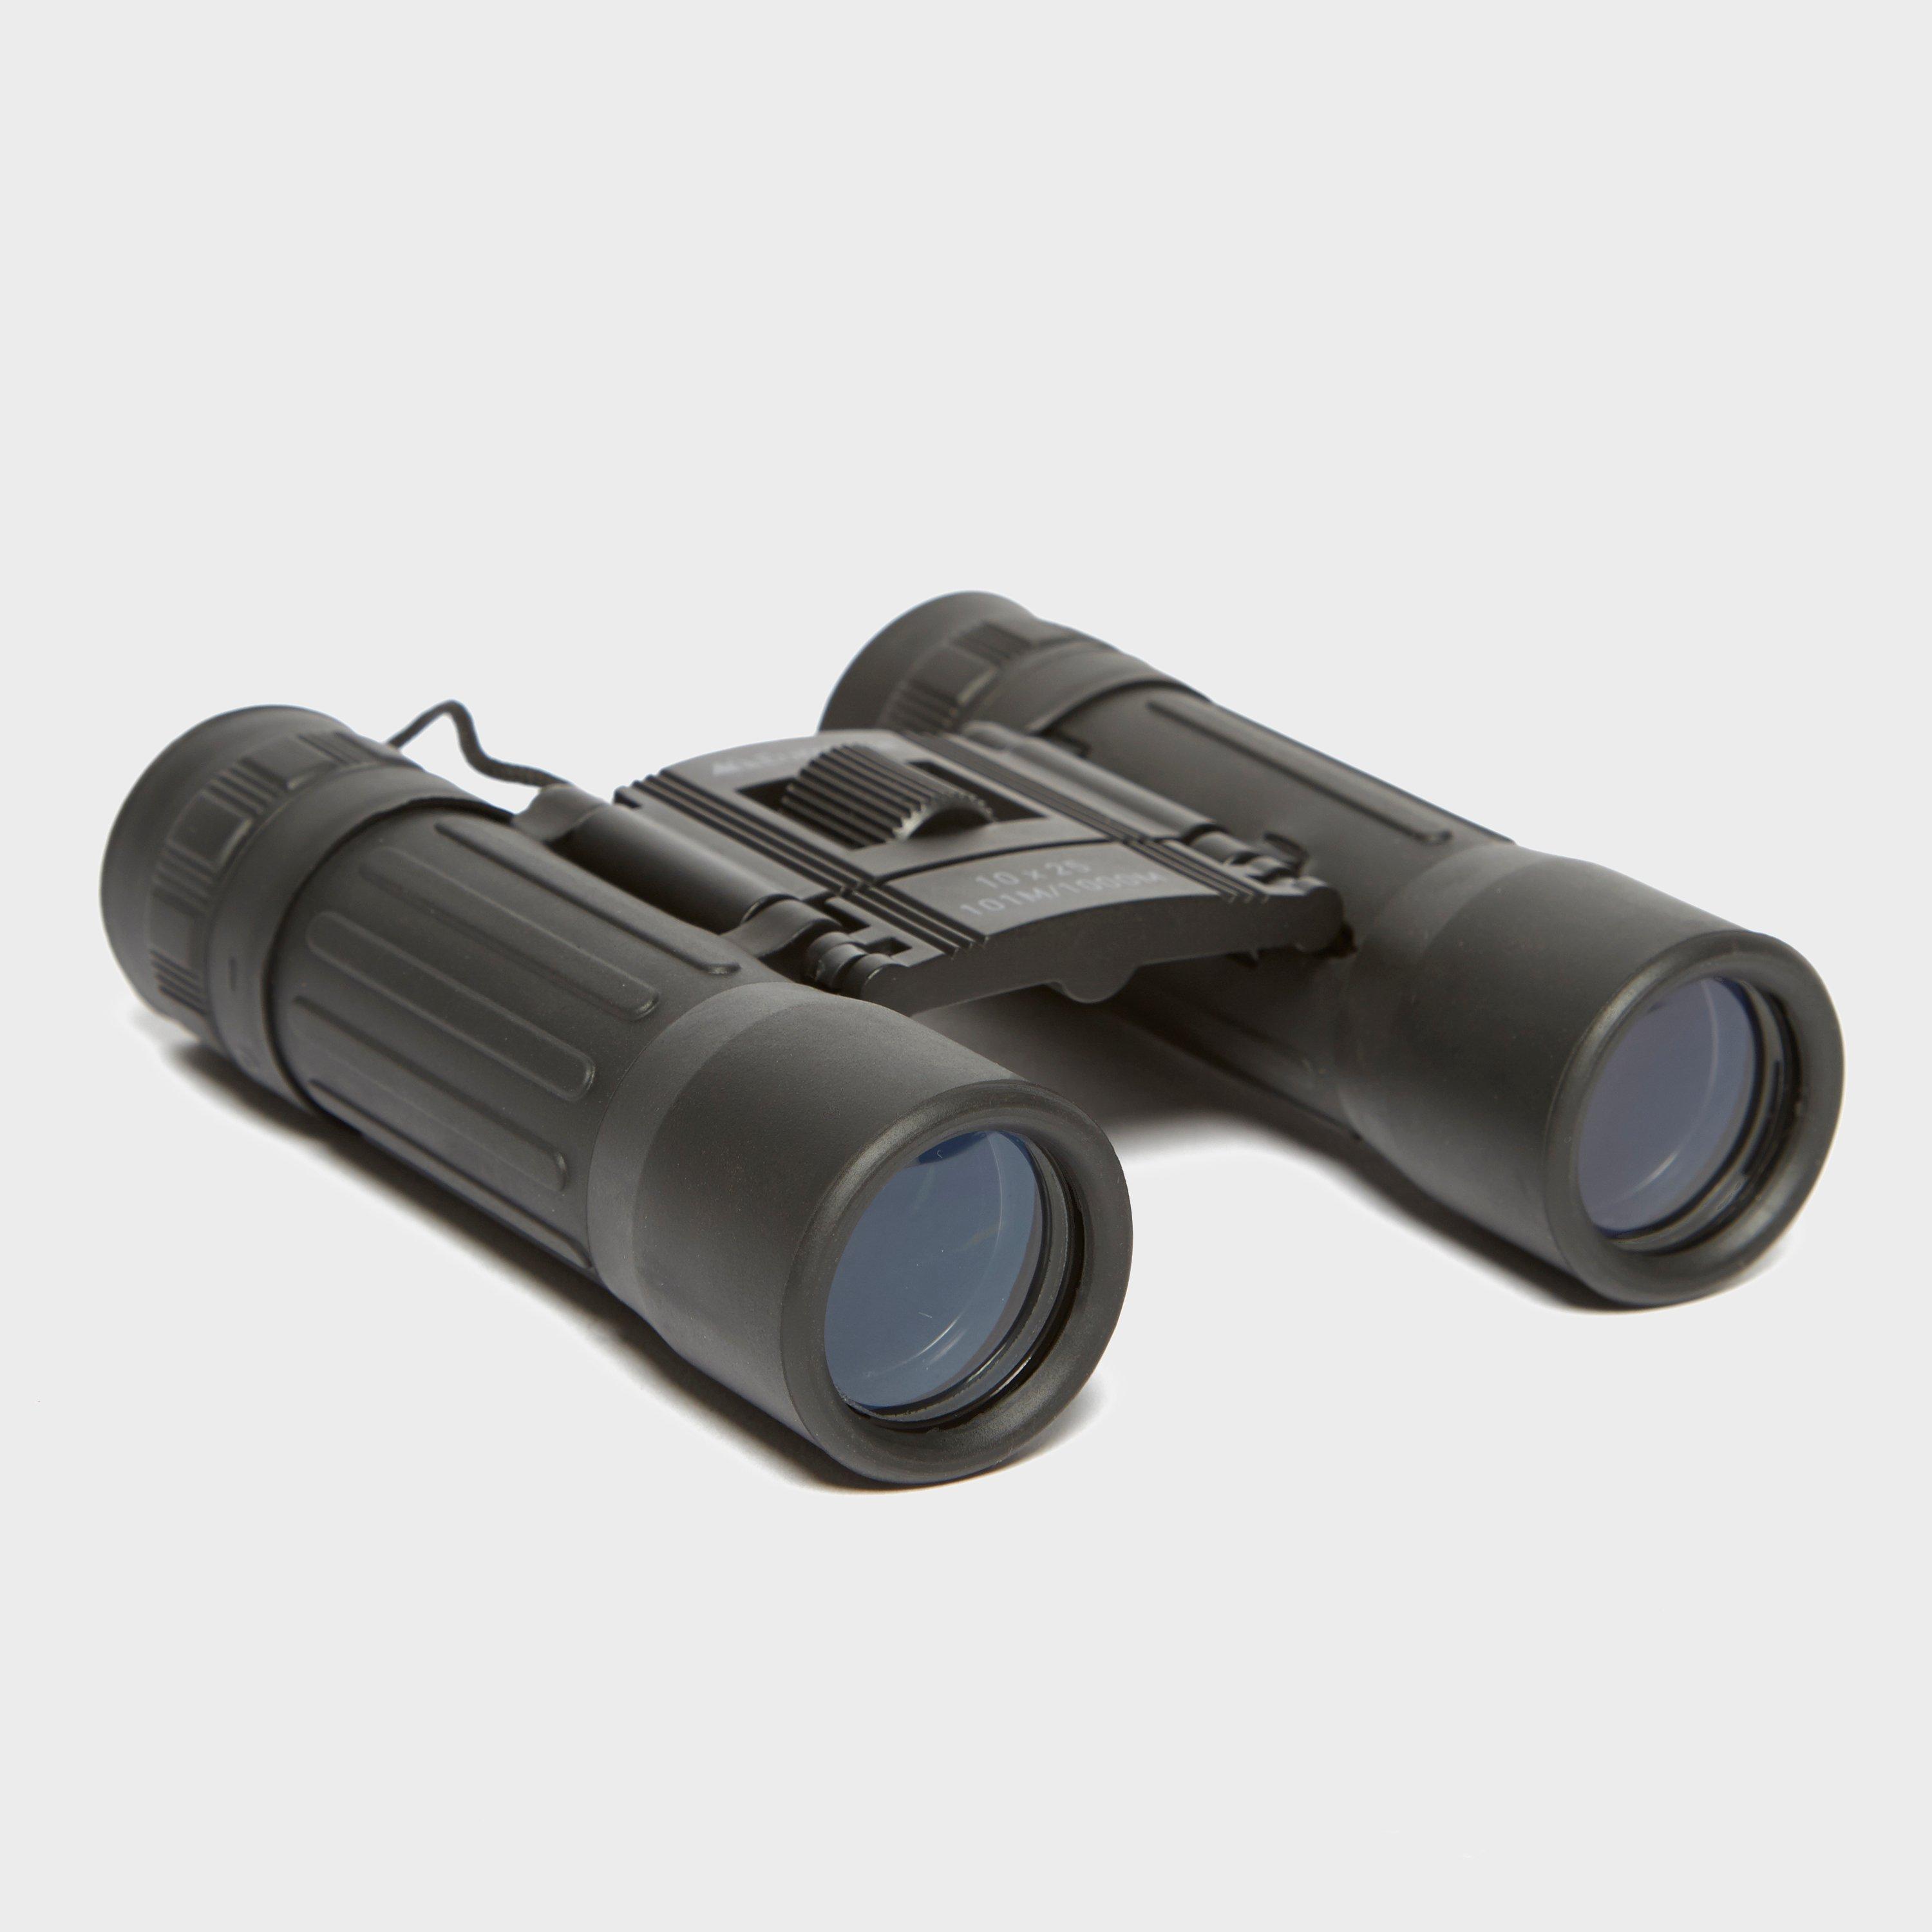 Eurohike 10 X 25 Binoculars - Black/blk  Black/blk